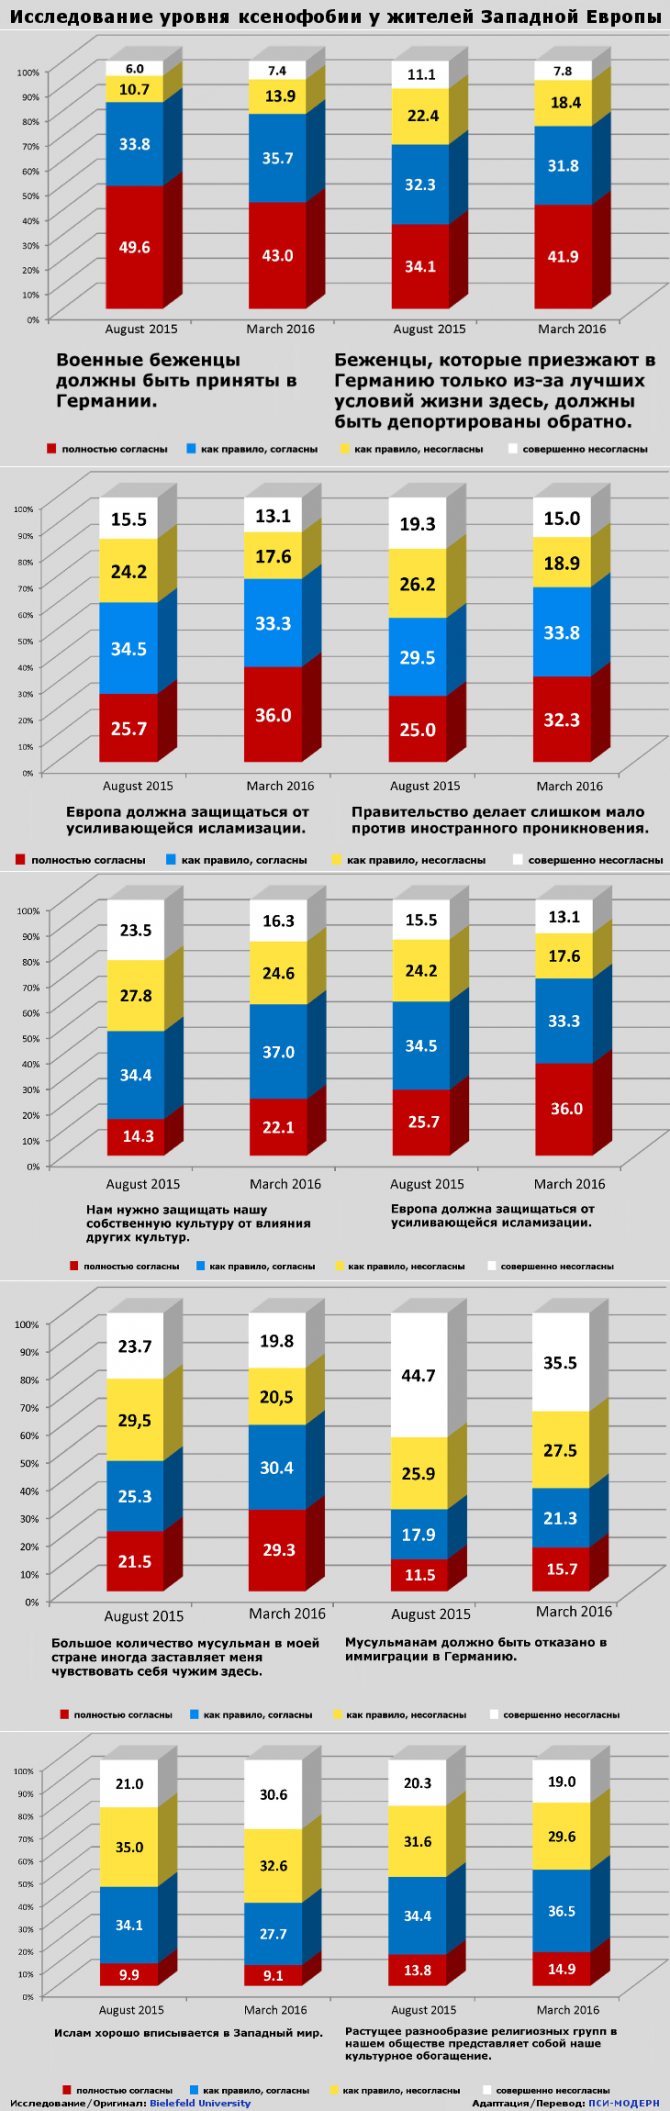 Уровень ксенофобии в Европе (2015-2016г.г.)